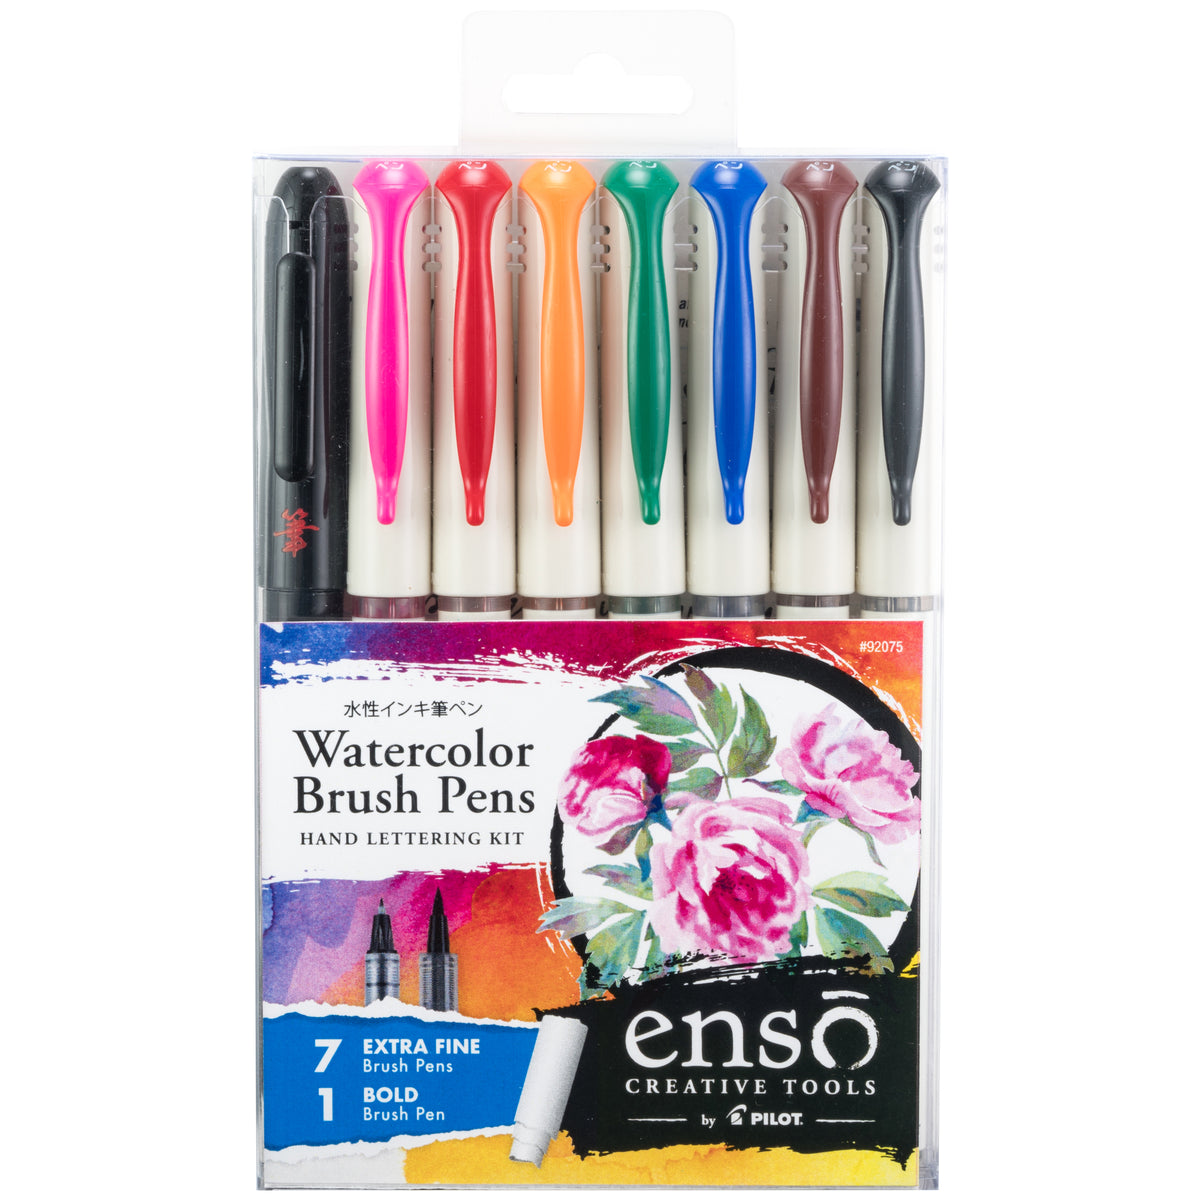 Pilot Ensō Watercolor Brush Pens 8 Piece Set